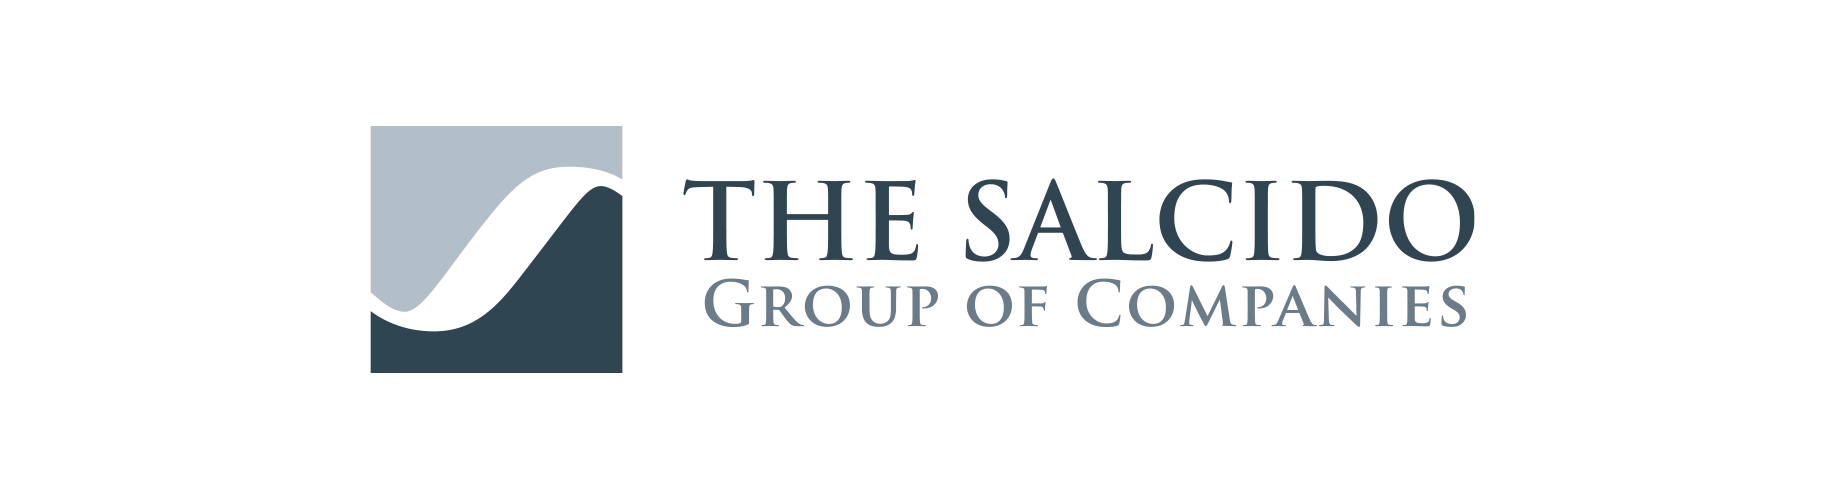 The Salcido Connection, Inc. Logo